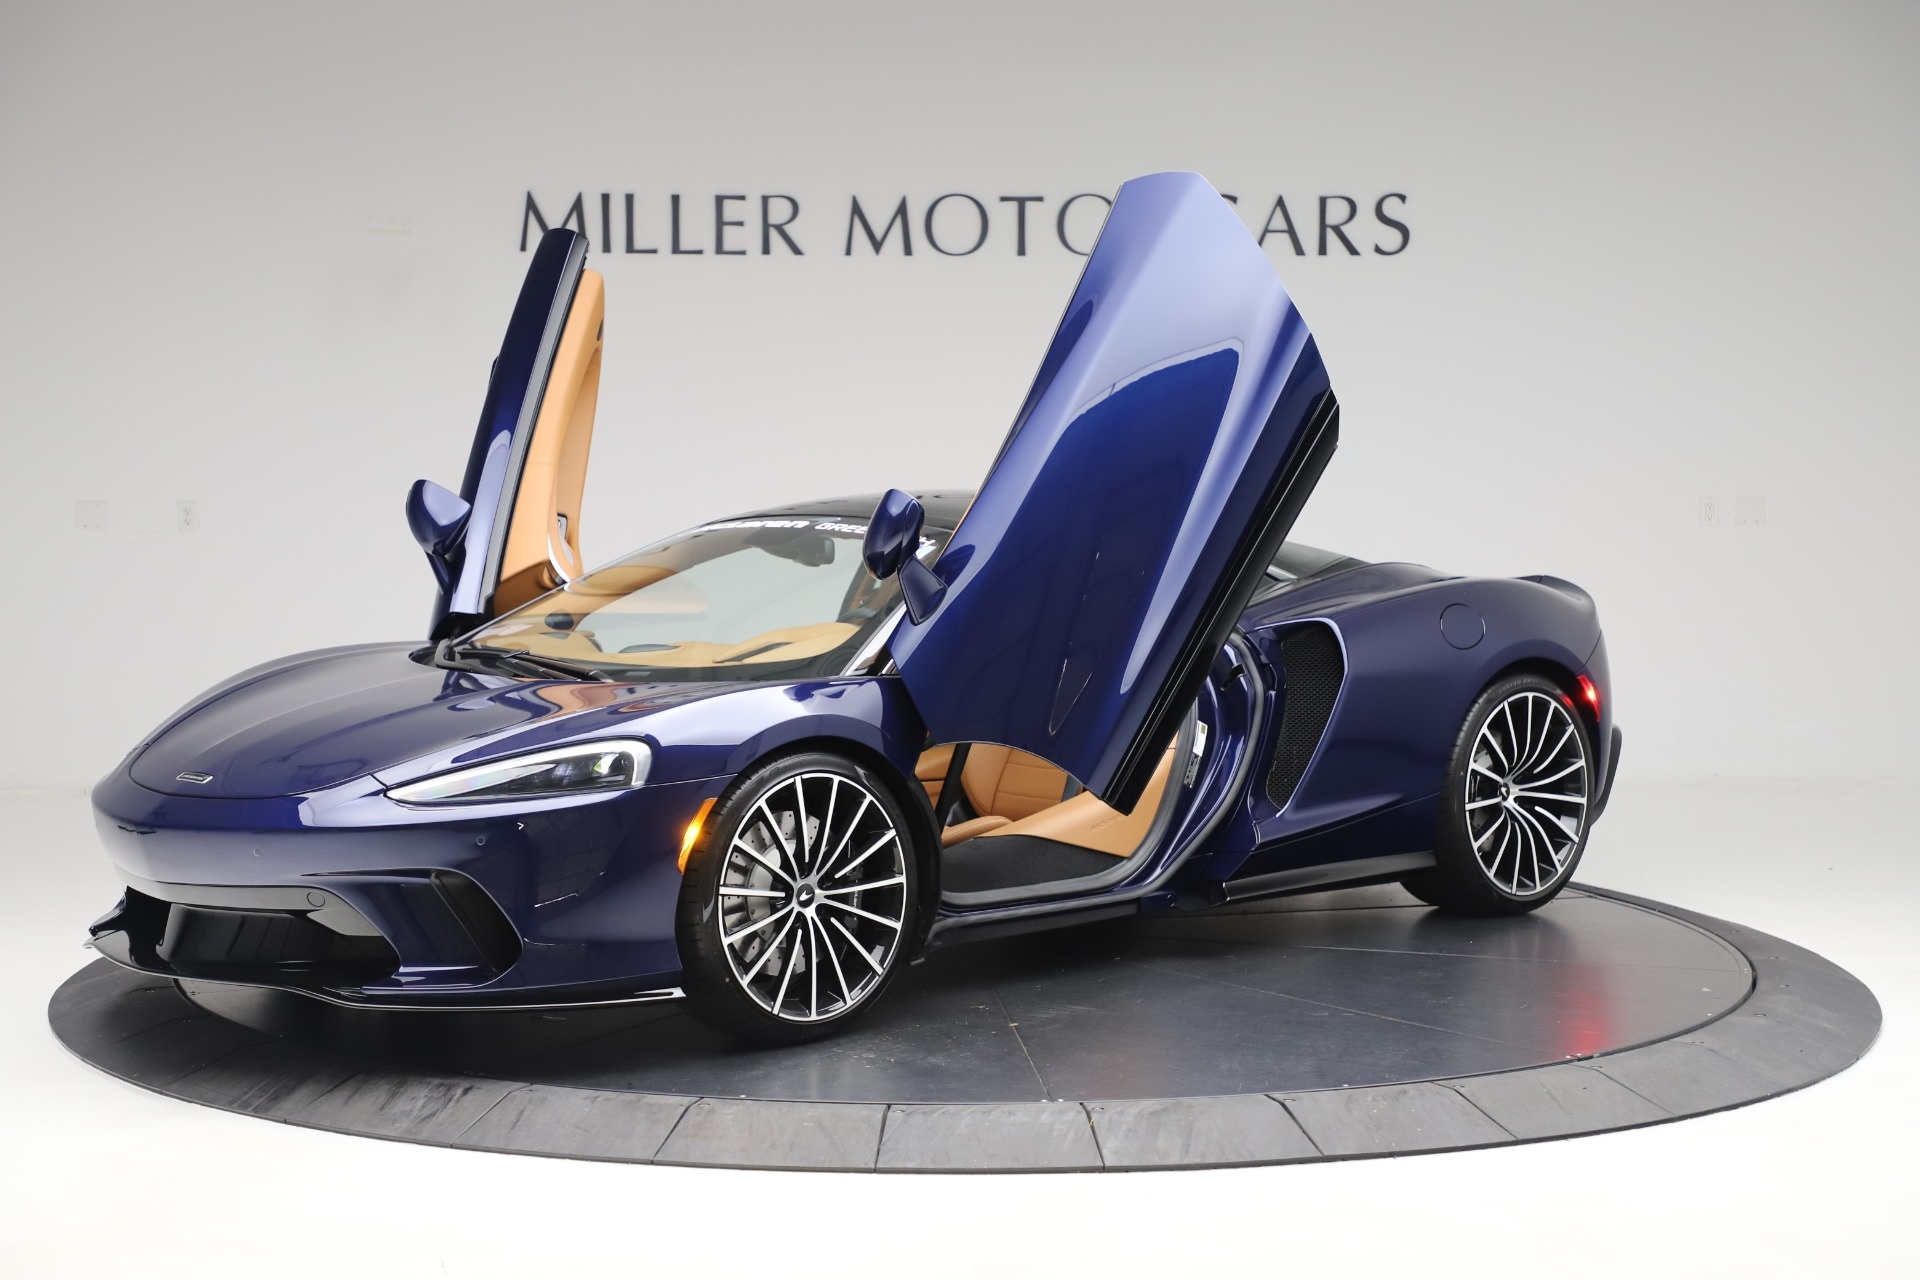 McLaren GT, New 2020, Miller Motorcars, Luxe for sale, 1920x1280 HD Desktop